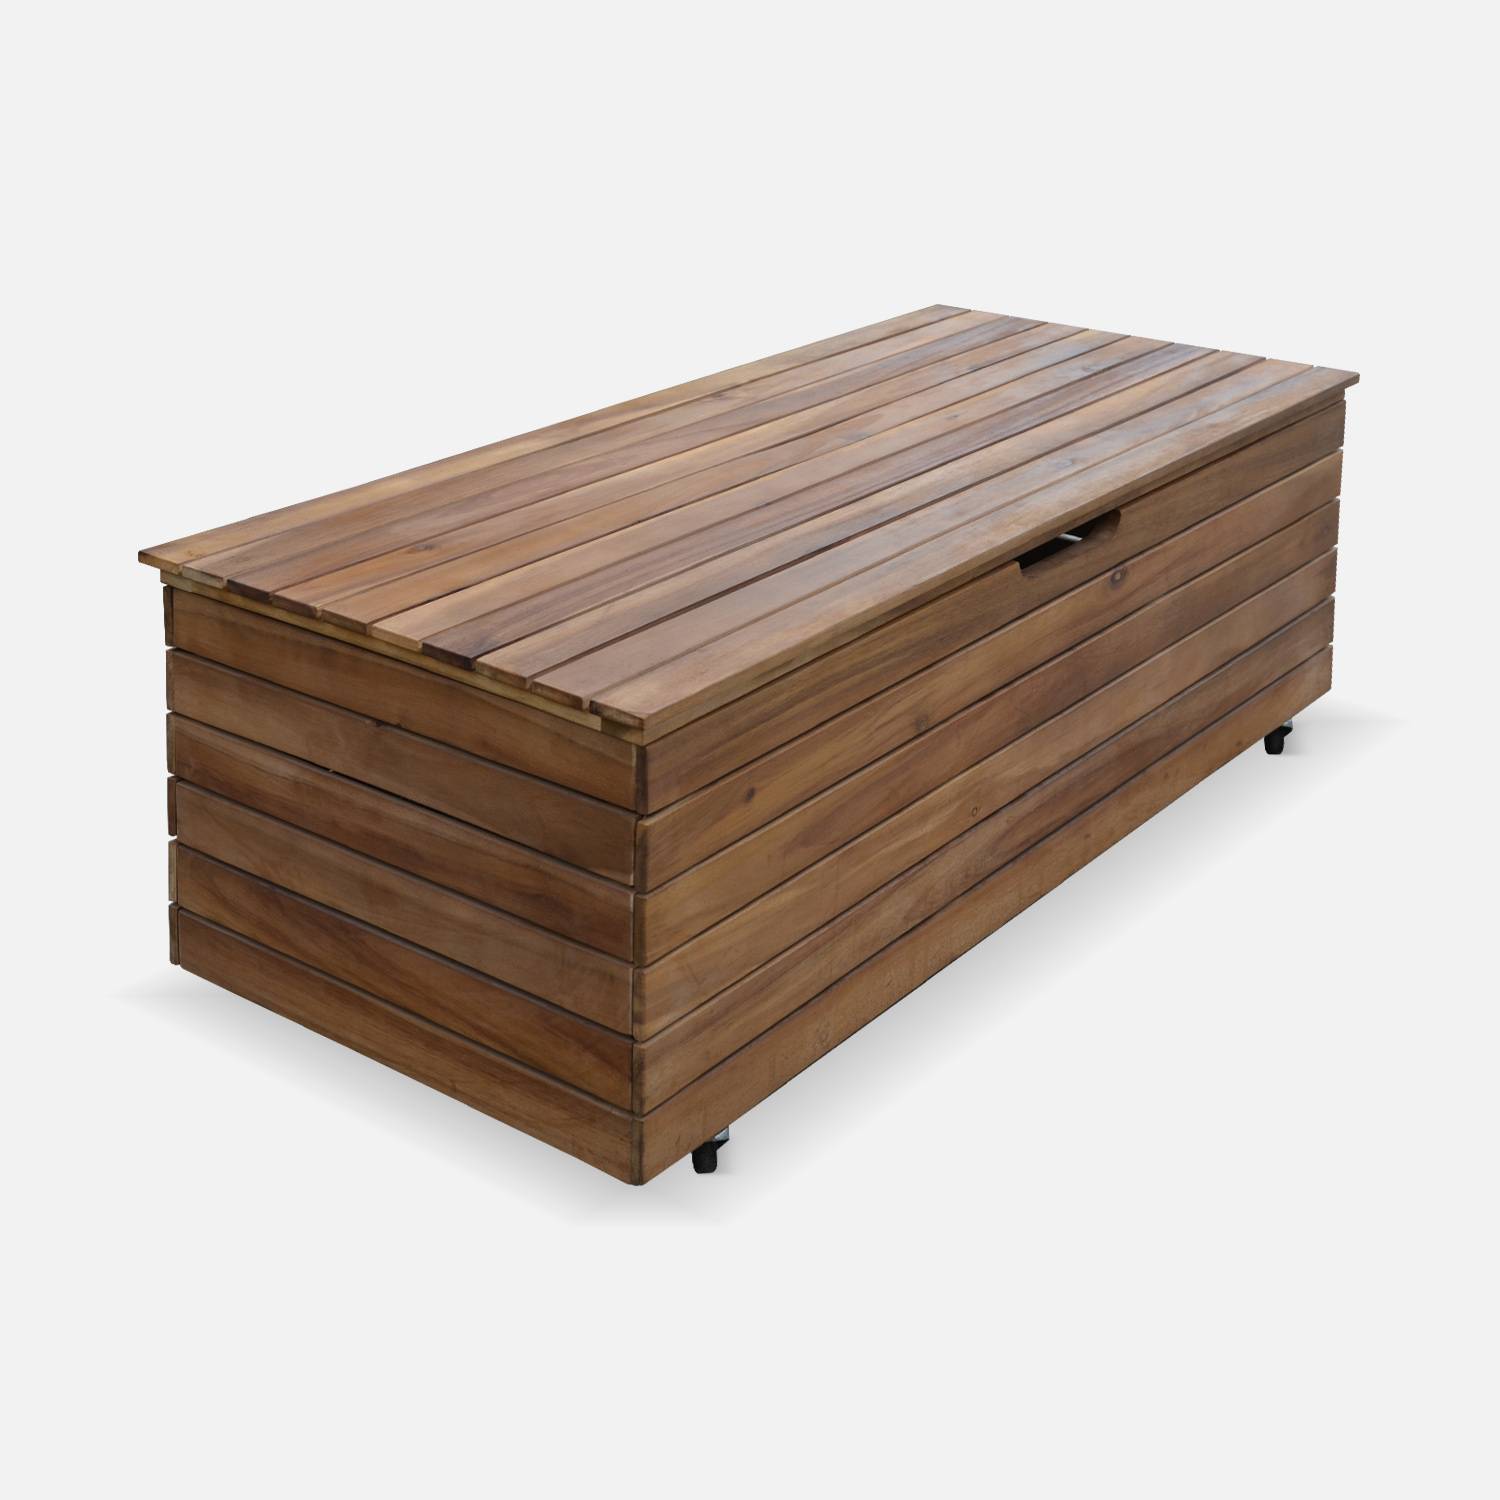 Caixa de madeira para jardim - Zaragoza - 110L, almofada de armazenamento 107x48,5cm com suportes e rodas Photo3